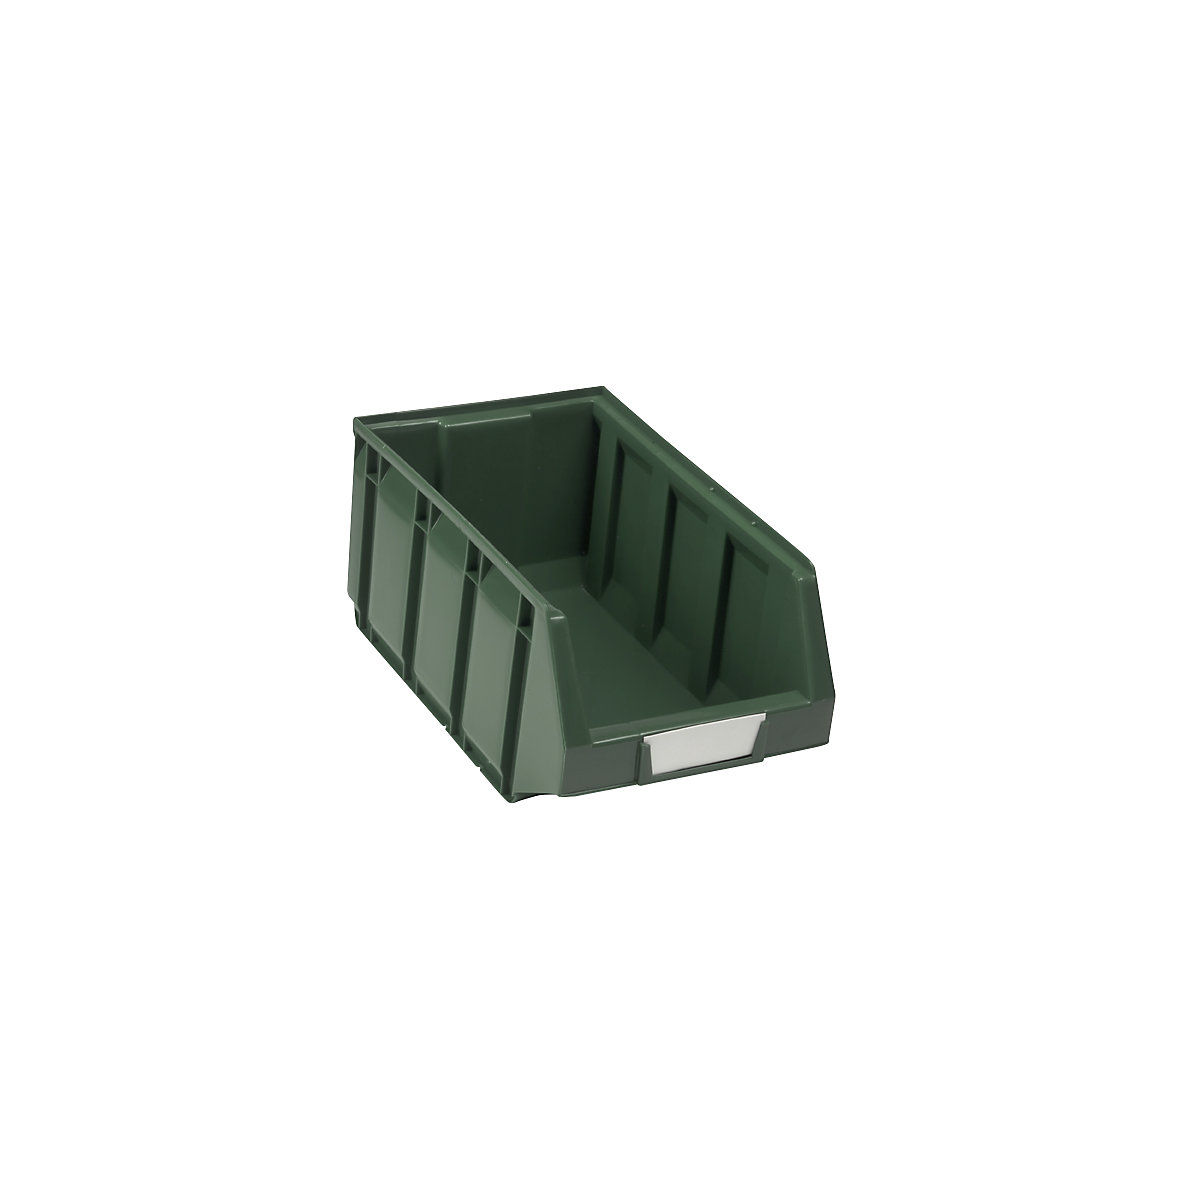 Sichtlagerkasten aus Polyethylen, LxBxH 345 x 205 x 164 mm, grün, VE 24 Stk-11